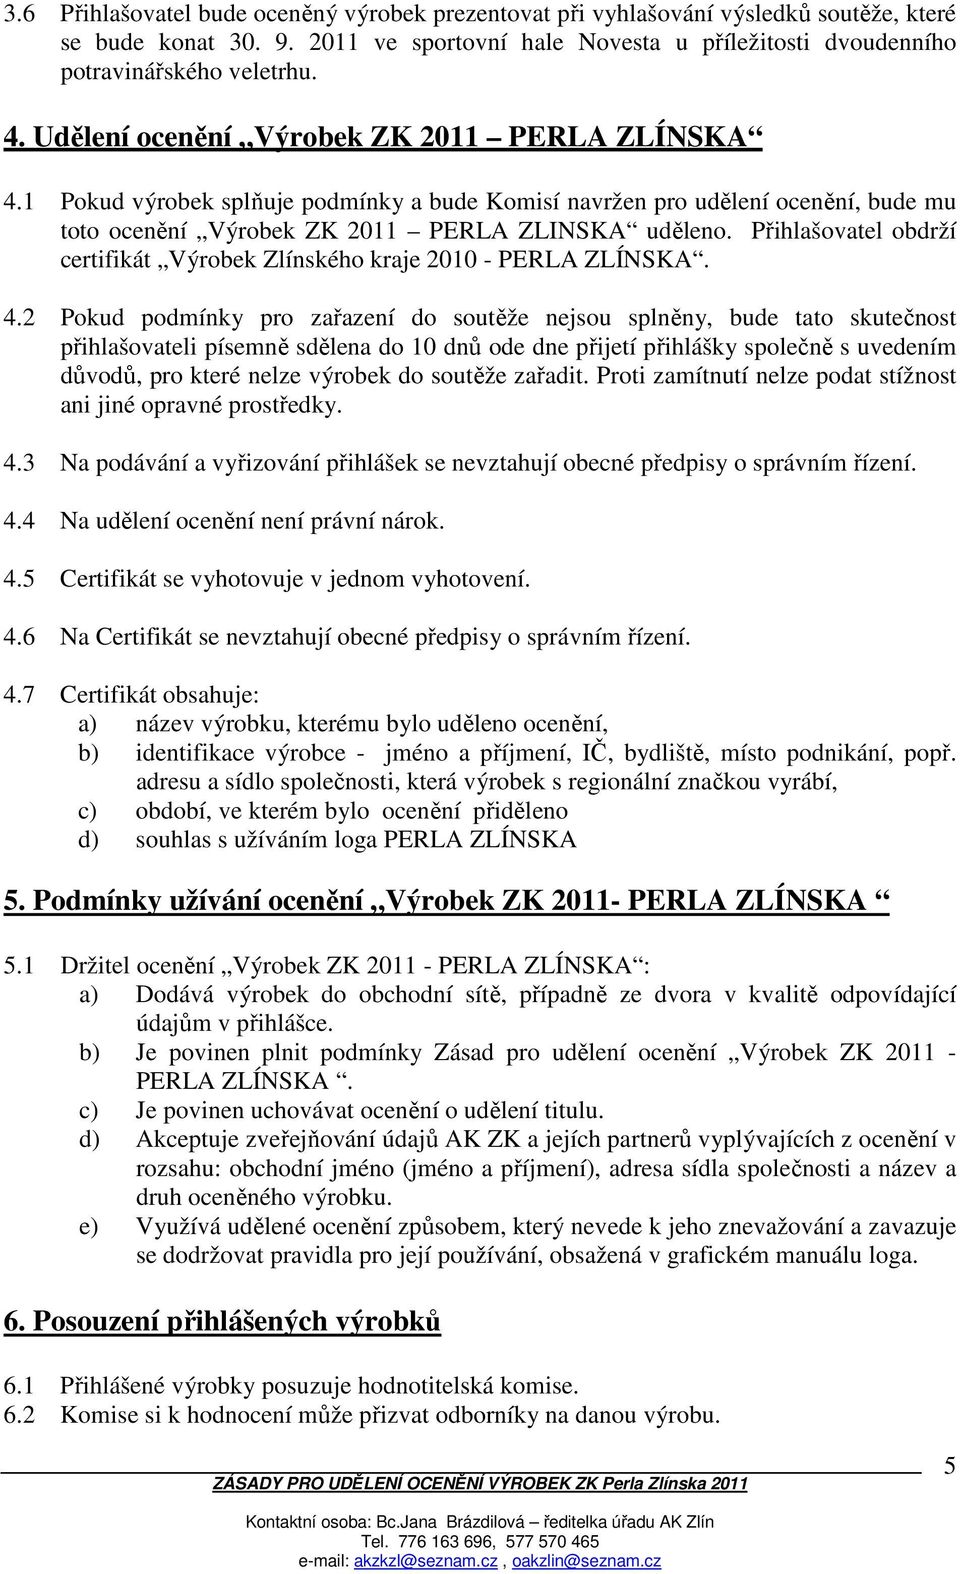 Přihlašovatel obdrží certifikát Výrobek Zlínského kraje 2010 - PERLA ZLÍNSKA. 4.